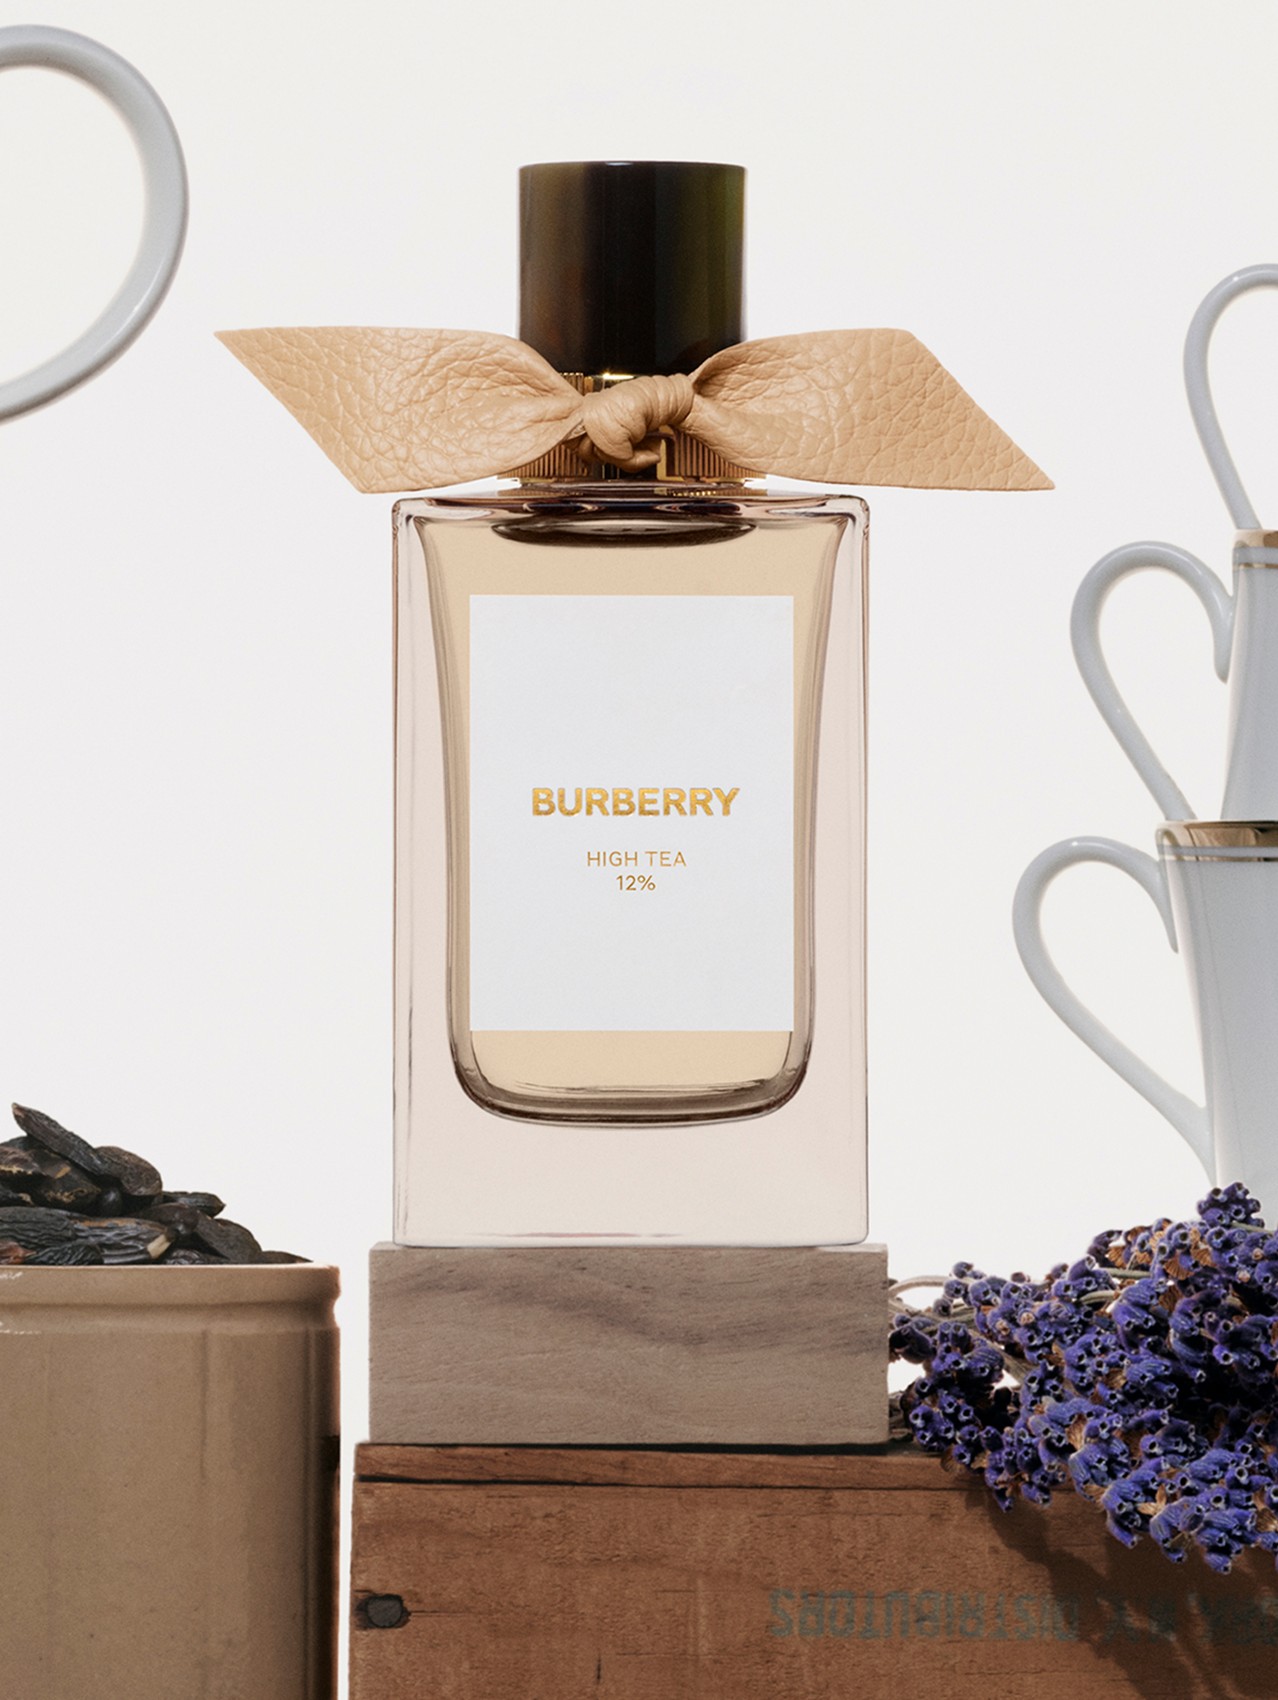 Burberry Signatures Eau de Parfum High Tea 100 ml